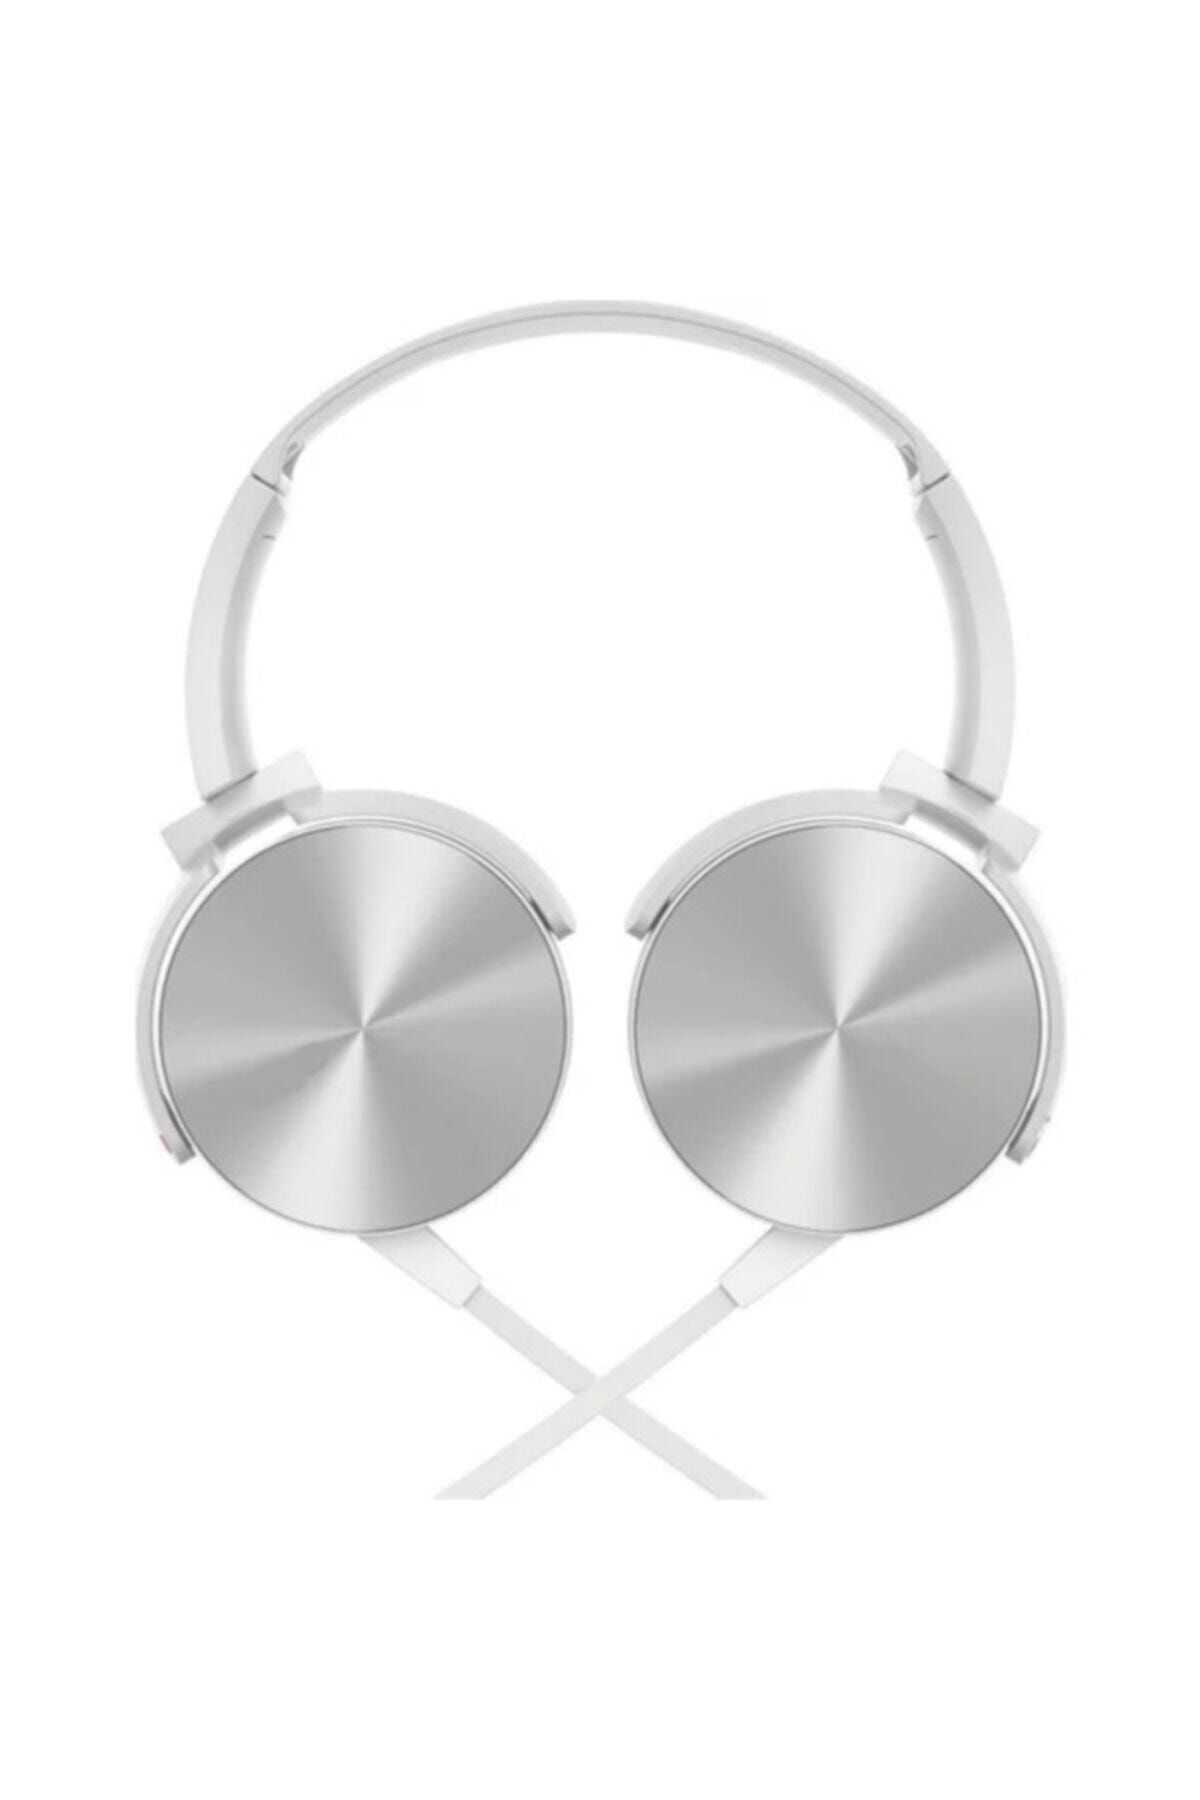 Teknoloji Gelsin Beyaz Extra Bass Kablolu Mikrofonlu Kulak Üstü Kulaklık